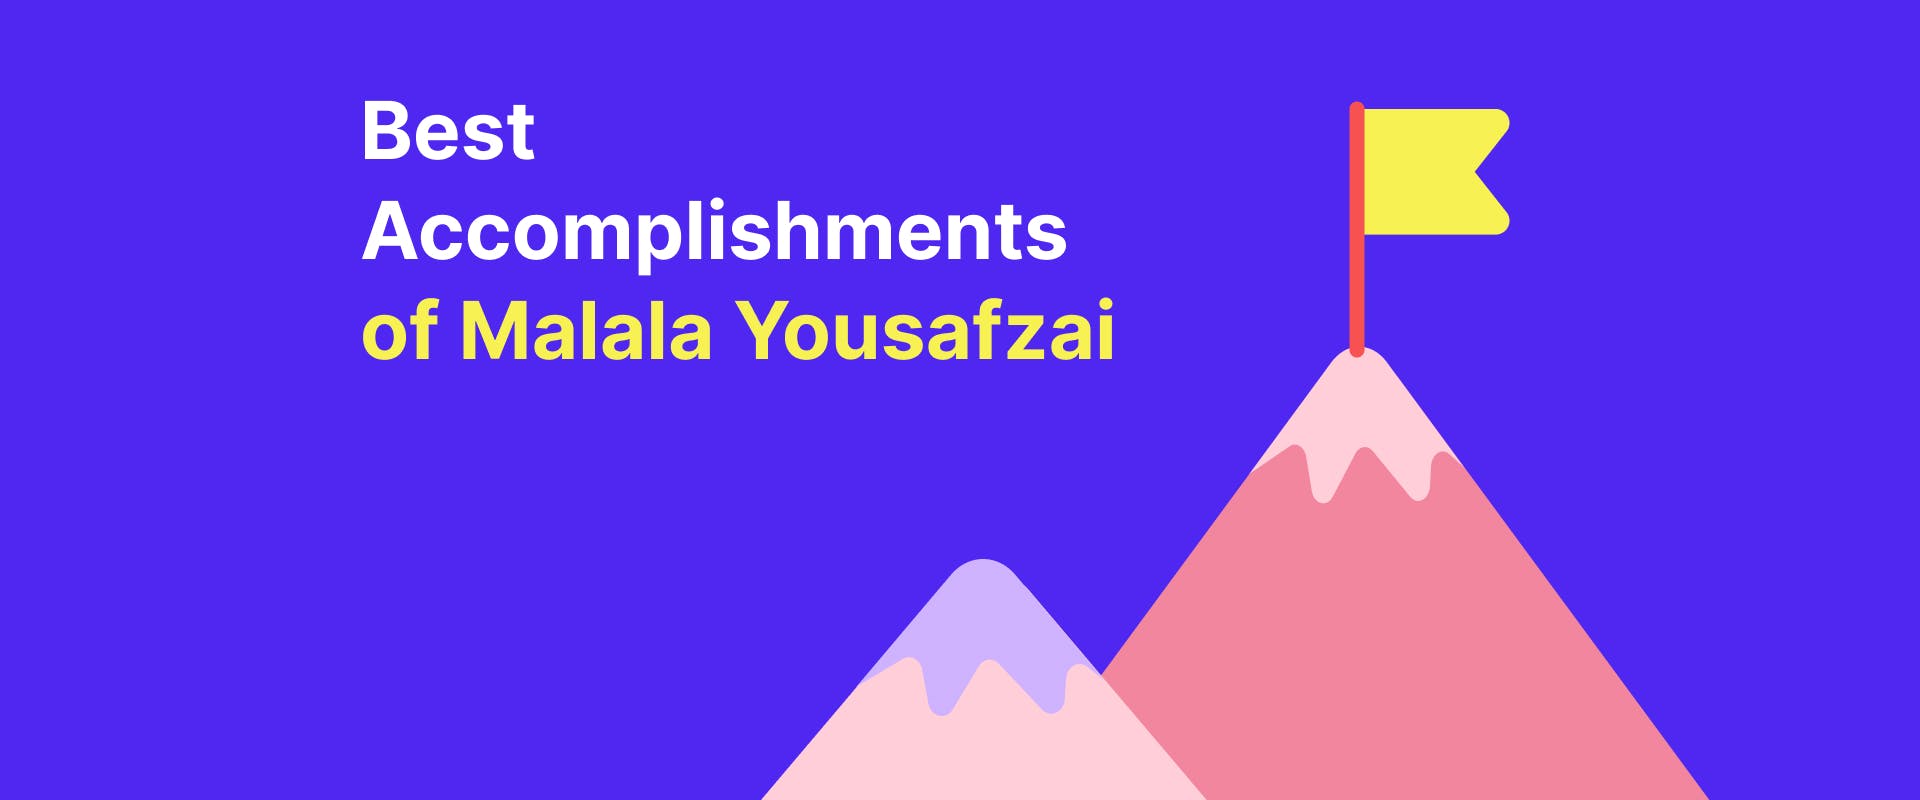 Best accomplishments of Malala Yousafzai